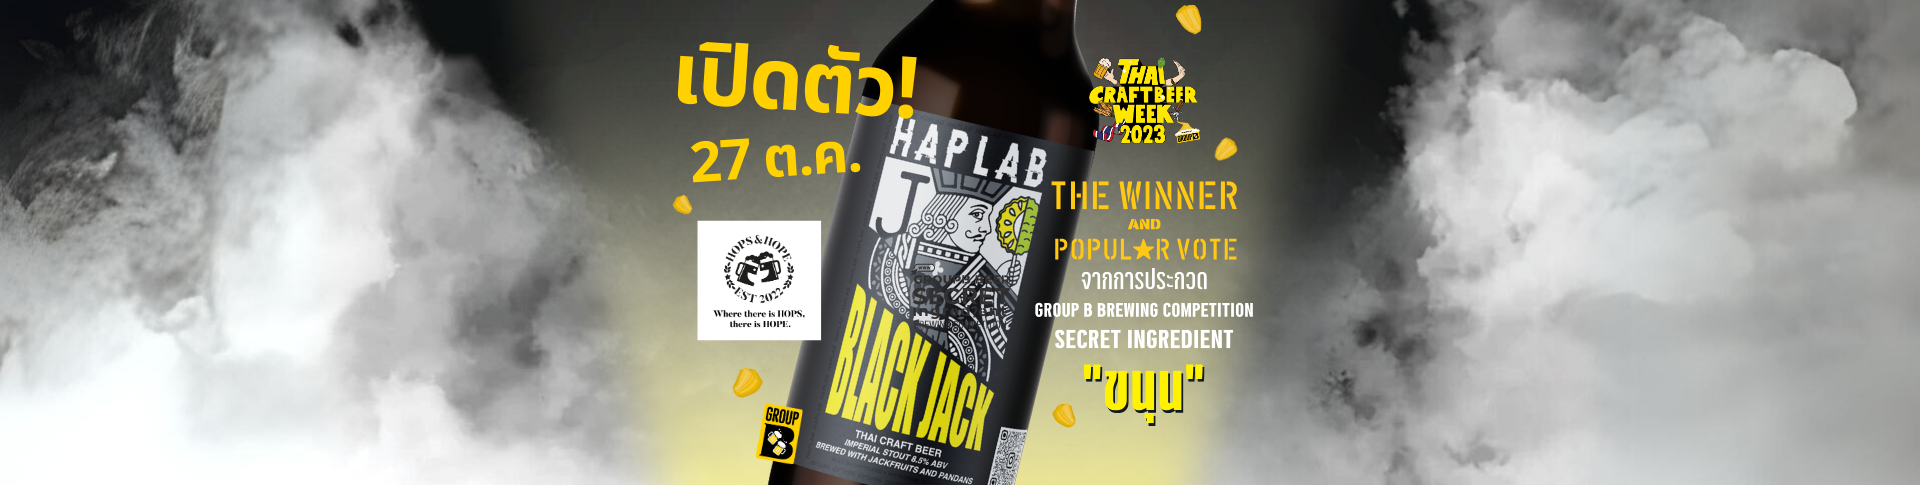 เปิดตัวเบียร์ Haplab @Hops & Hope